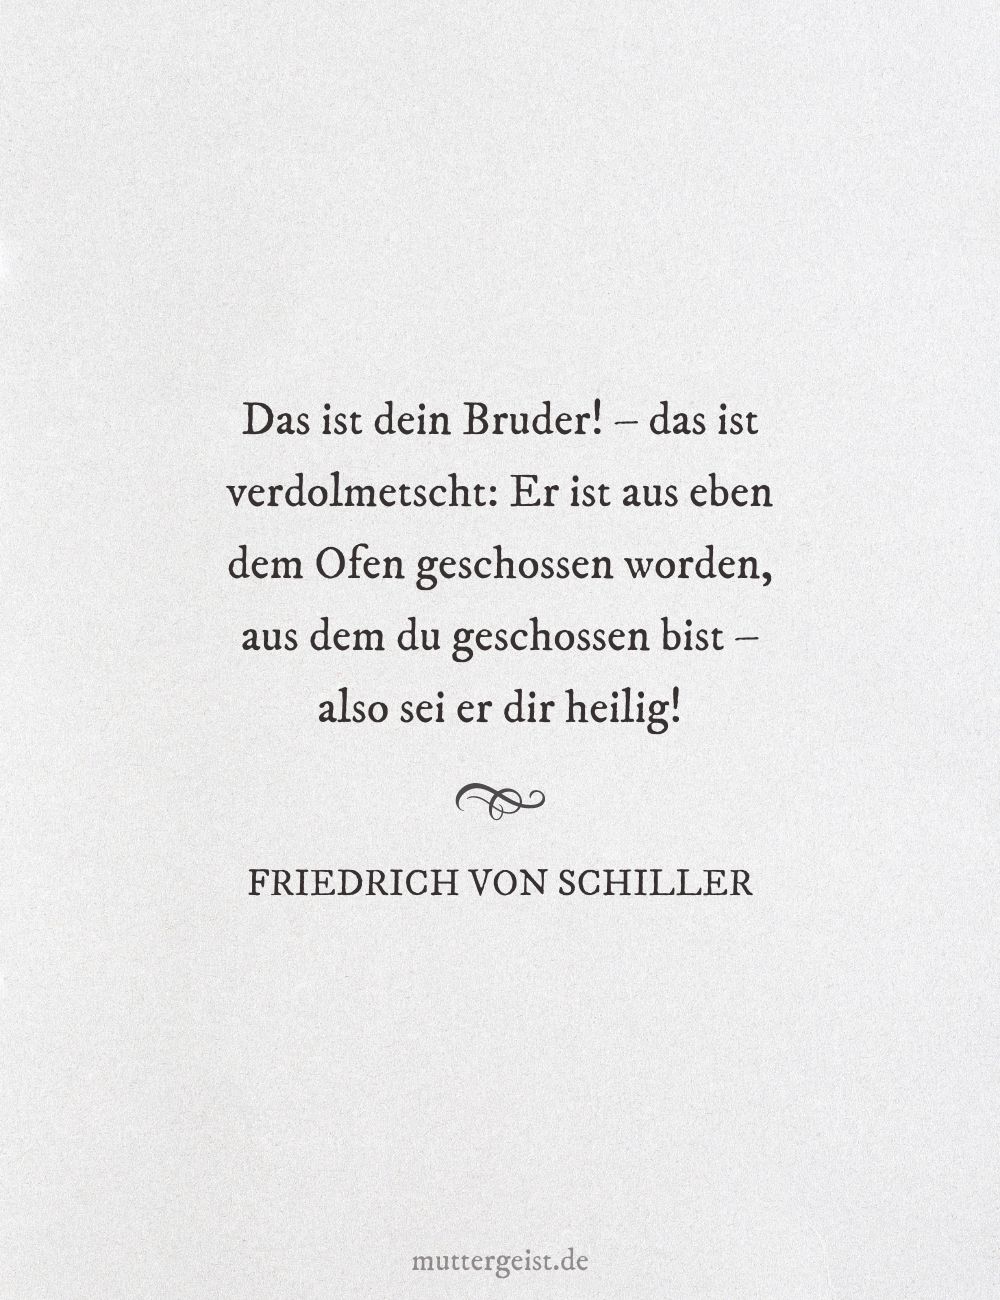 Friedrich von Schillers Zitat über Brüderlichkeit